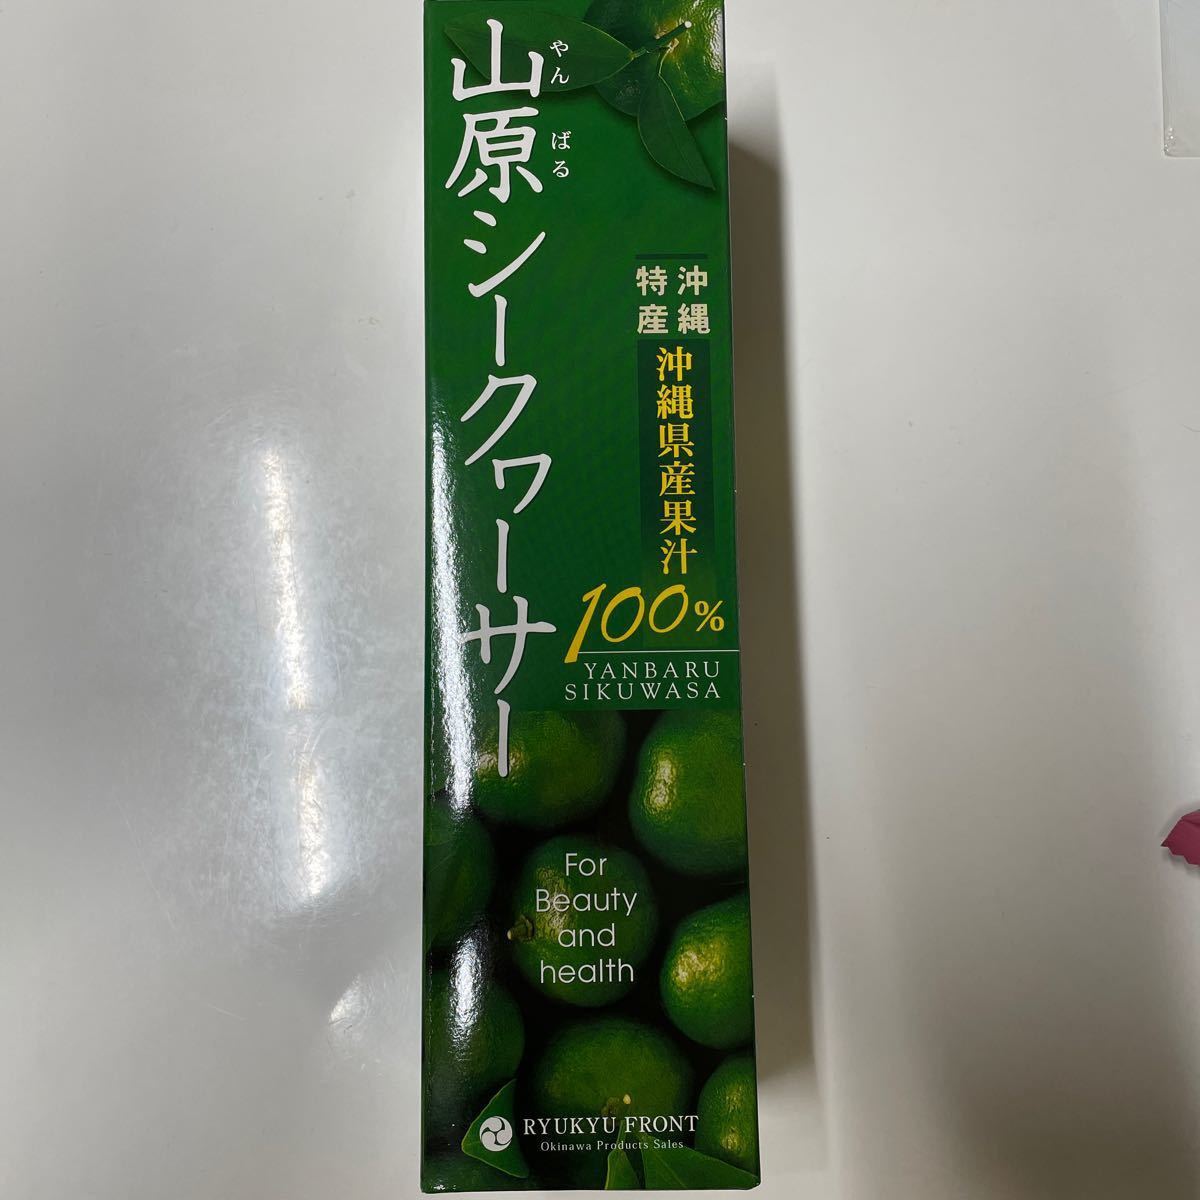 琉球フロント 山原シークヮーサー 瓶 720ml